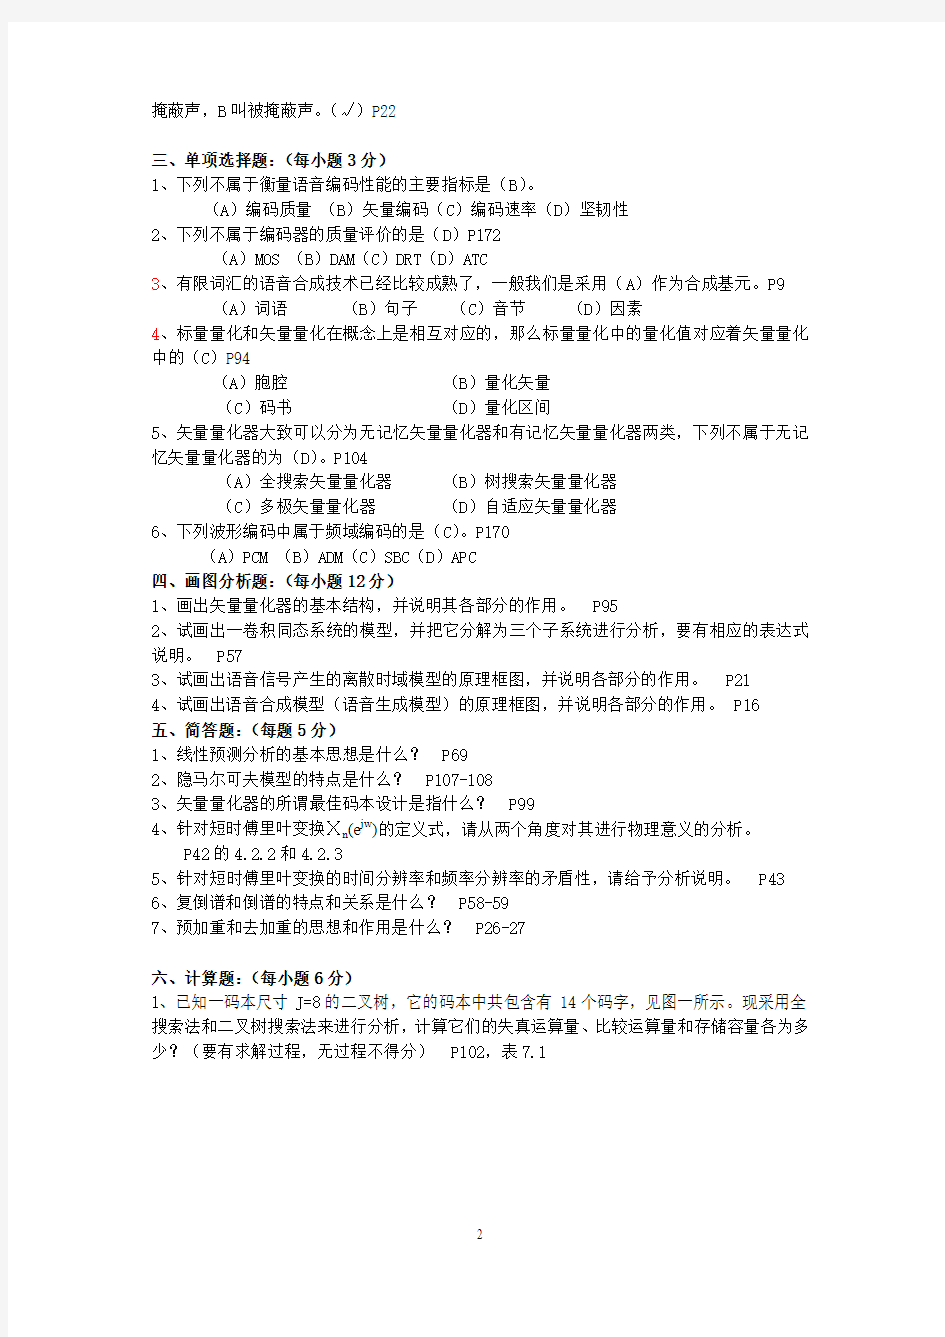 广州大学《语音信号处理》期末试题总结